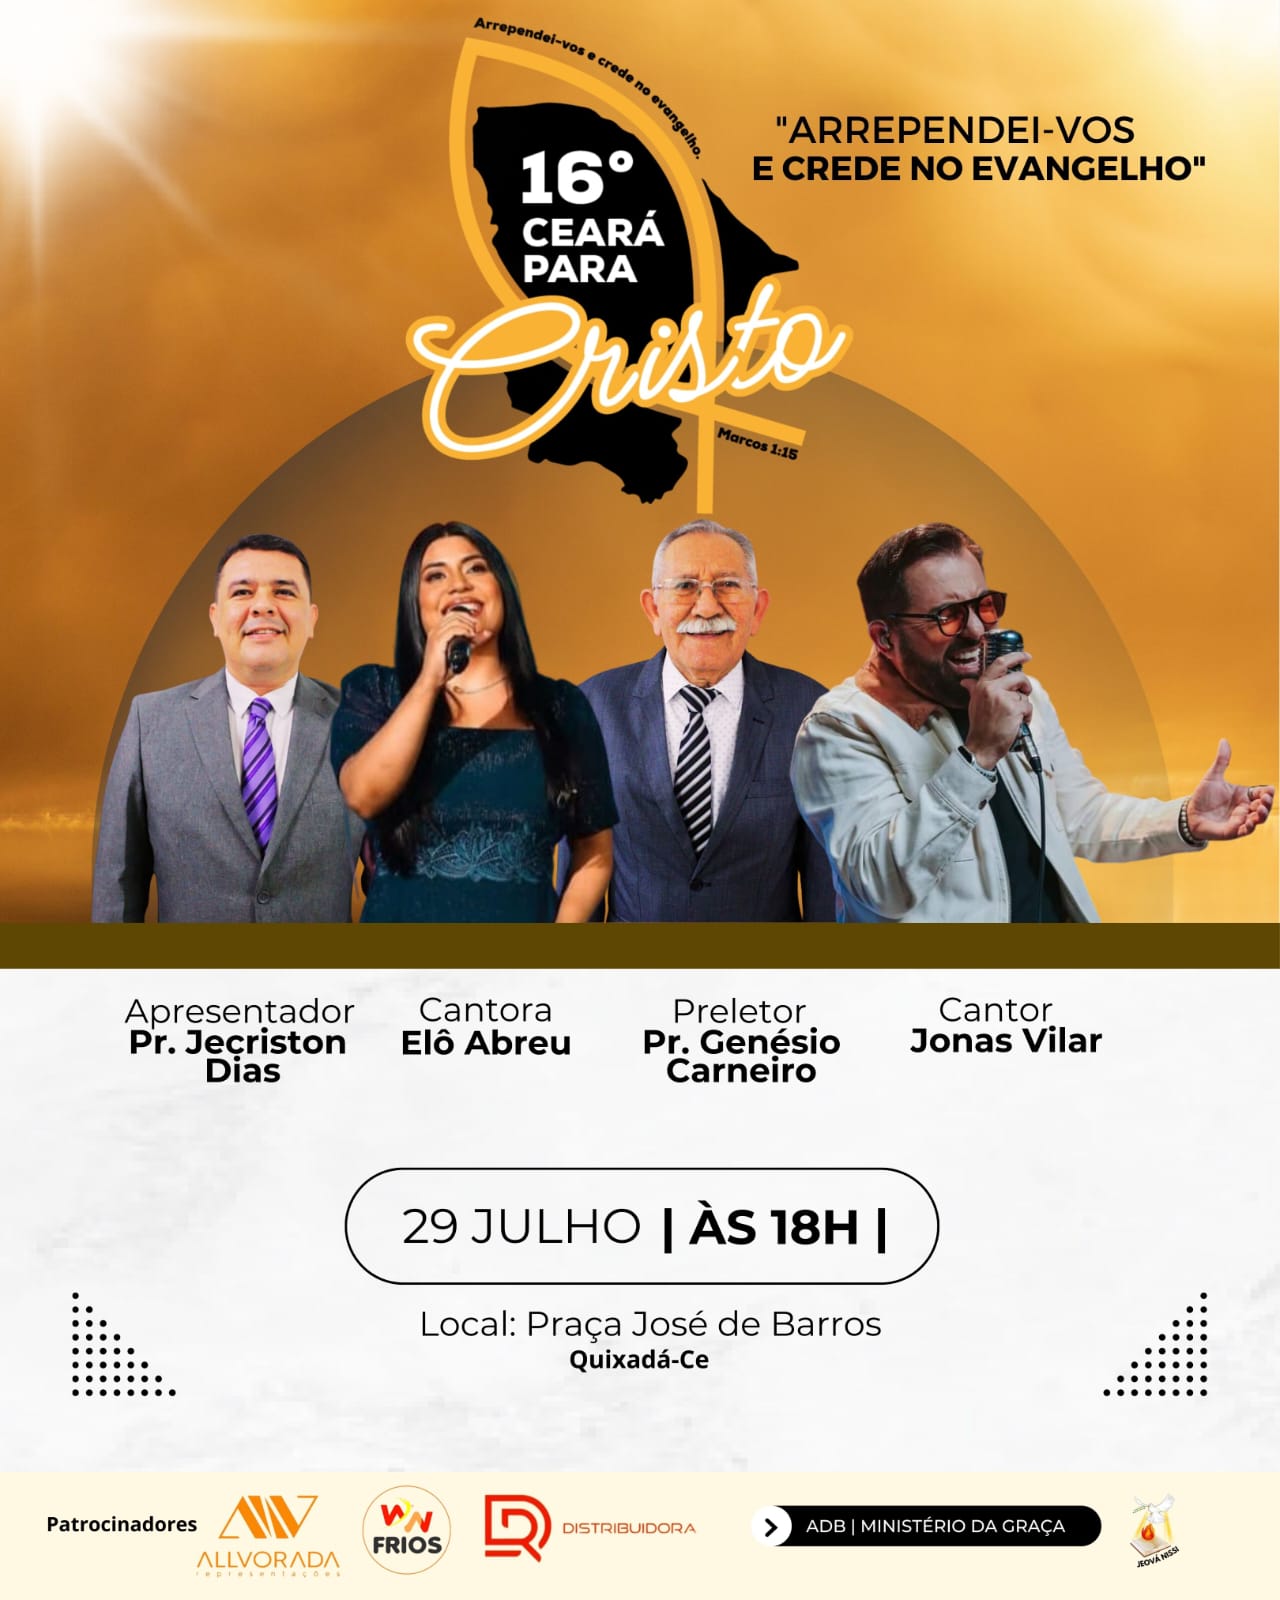 Quixadá Assembleia De Deus No Brasil Ministério Da Graça Promove Noite De Louvor E Adoração 